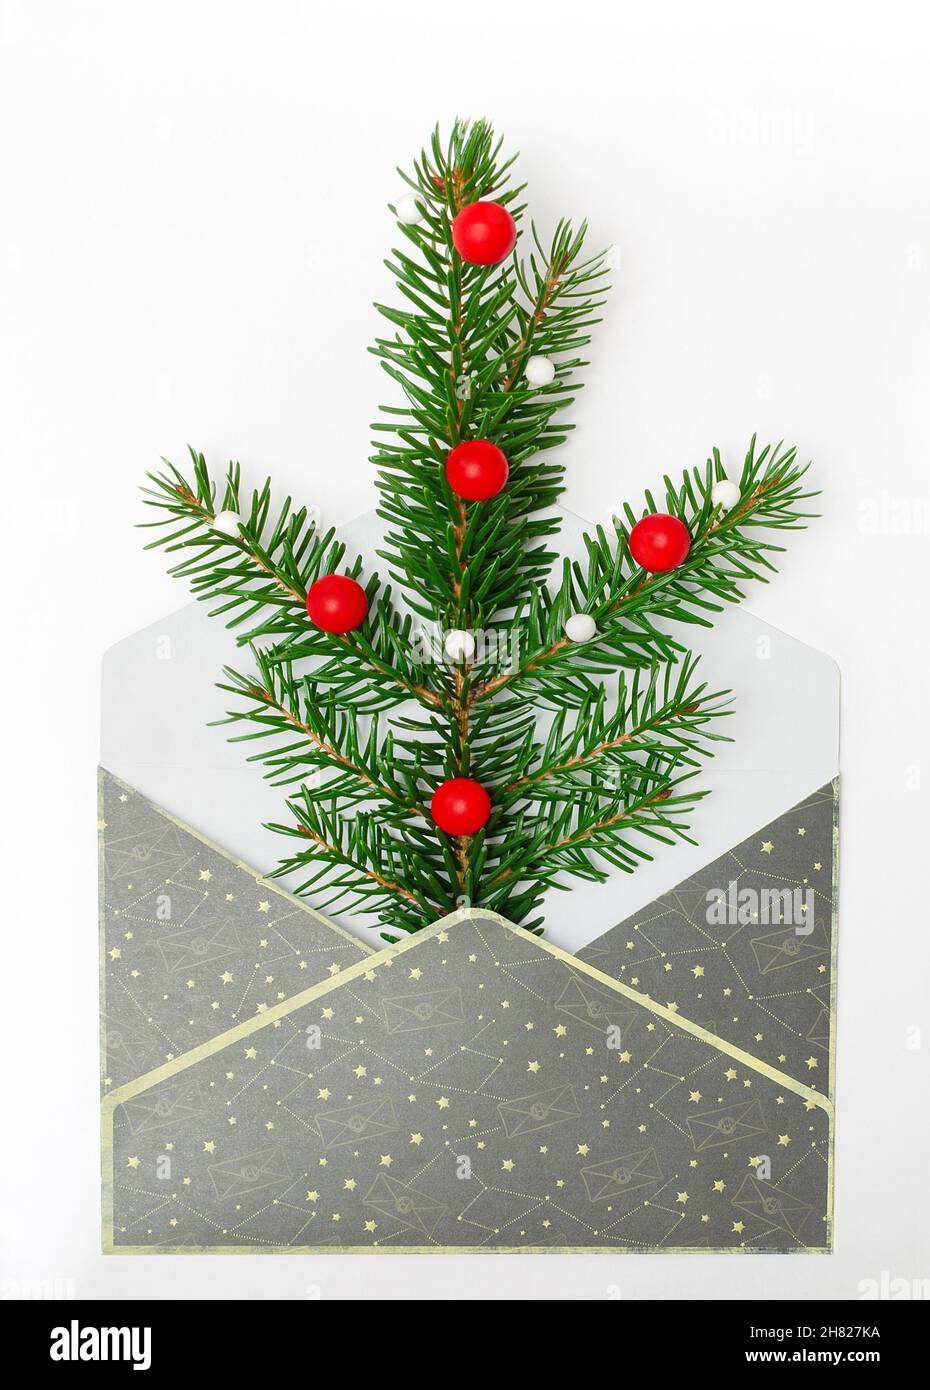 Weihnachtszweig aus Tanne in einem grauen Umschlag, Neujahrskarte. Fichtenzweig mit roten Kugeln auf weißem Hintergrund. Feiertage, Weihnachtskonzept, Stockfoto